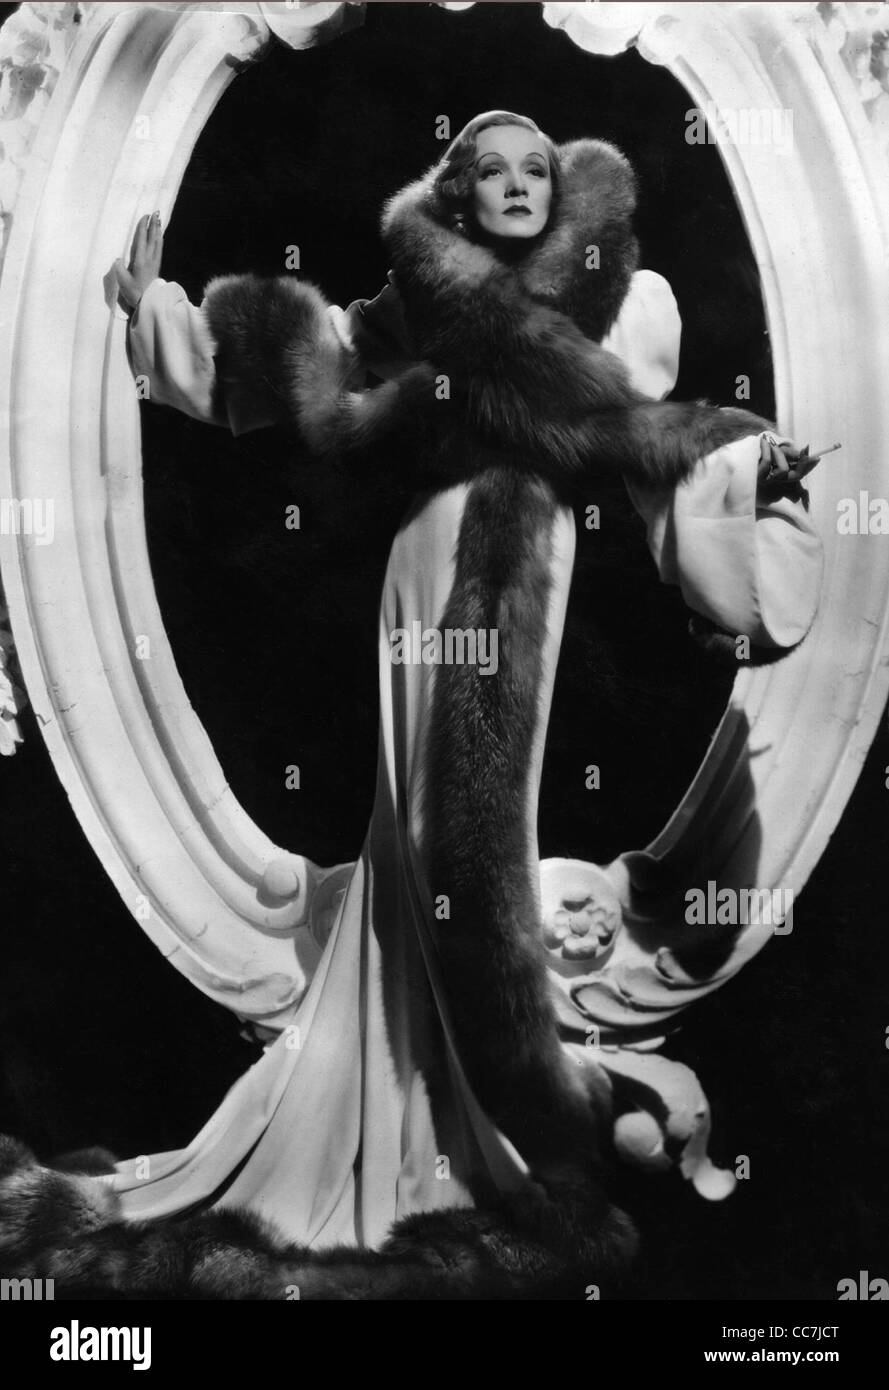 Marlene Dietrich (27 décembre 1901 - 6 mai 1992) - actrice et chanteuse germano-américain. Banque D'Images